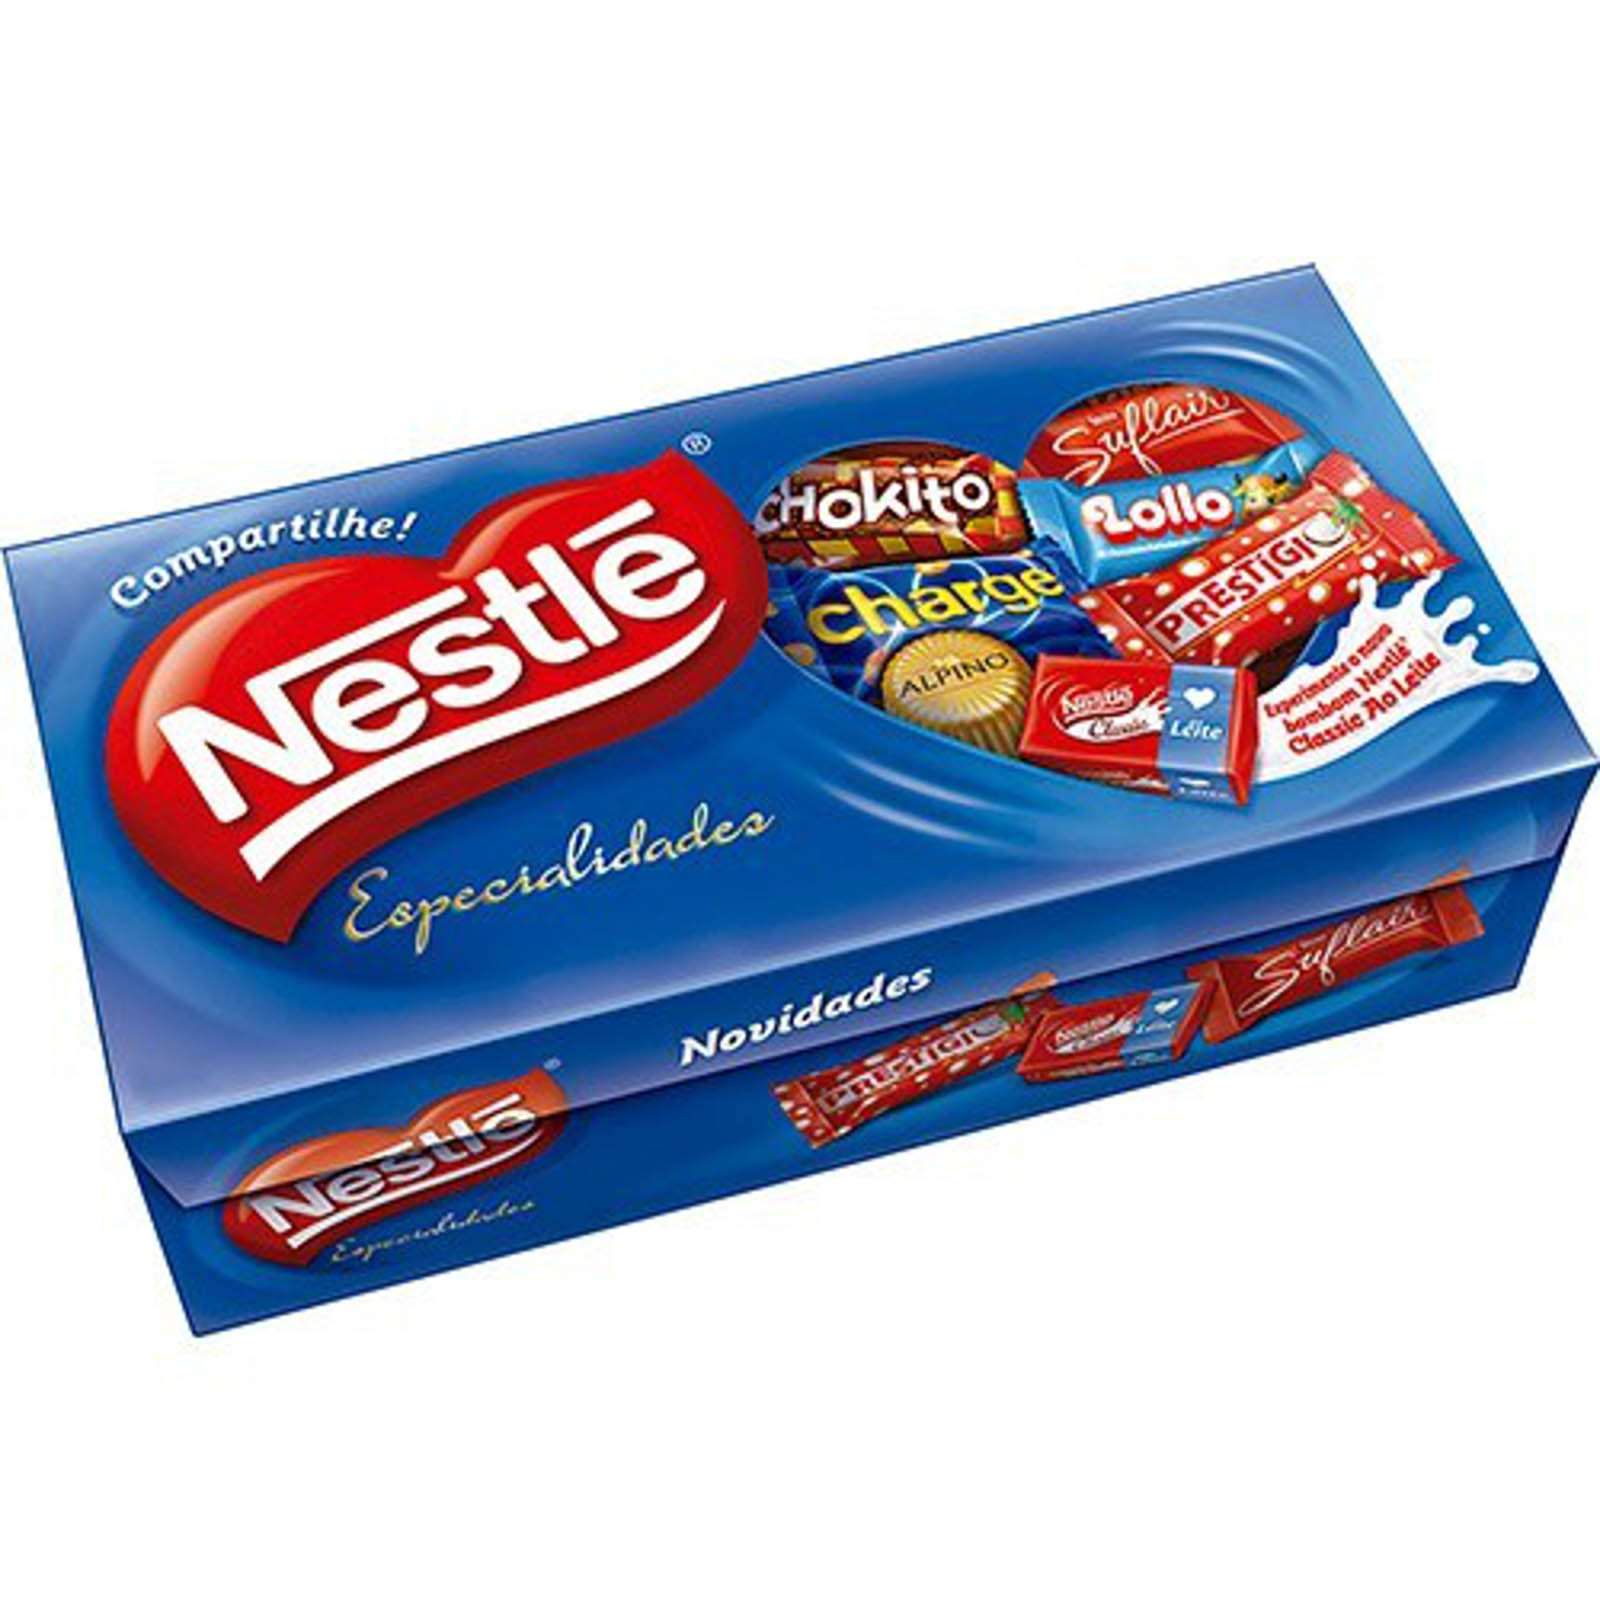 Caixa de Bombom Nestlé 300g